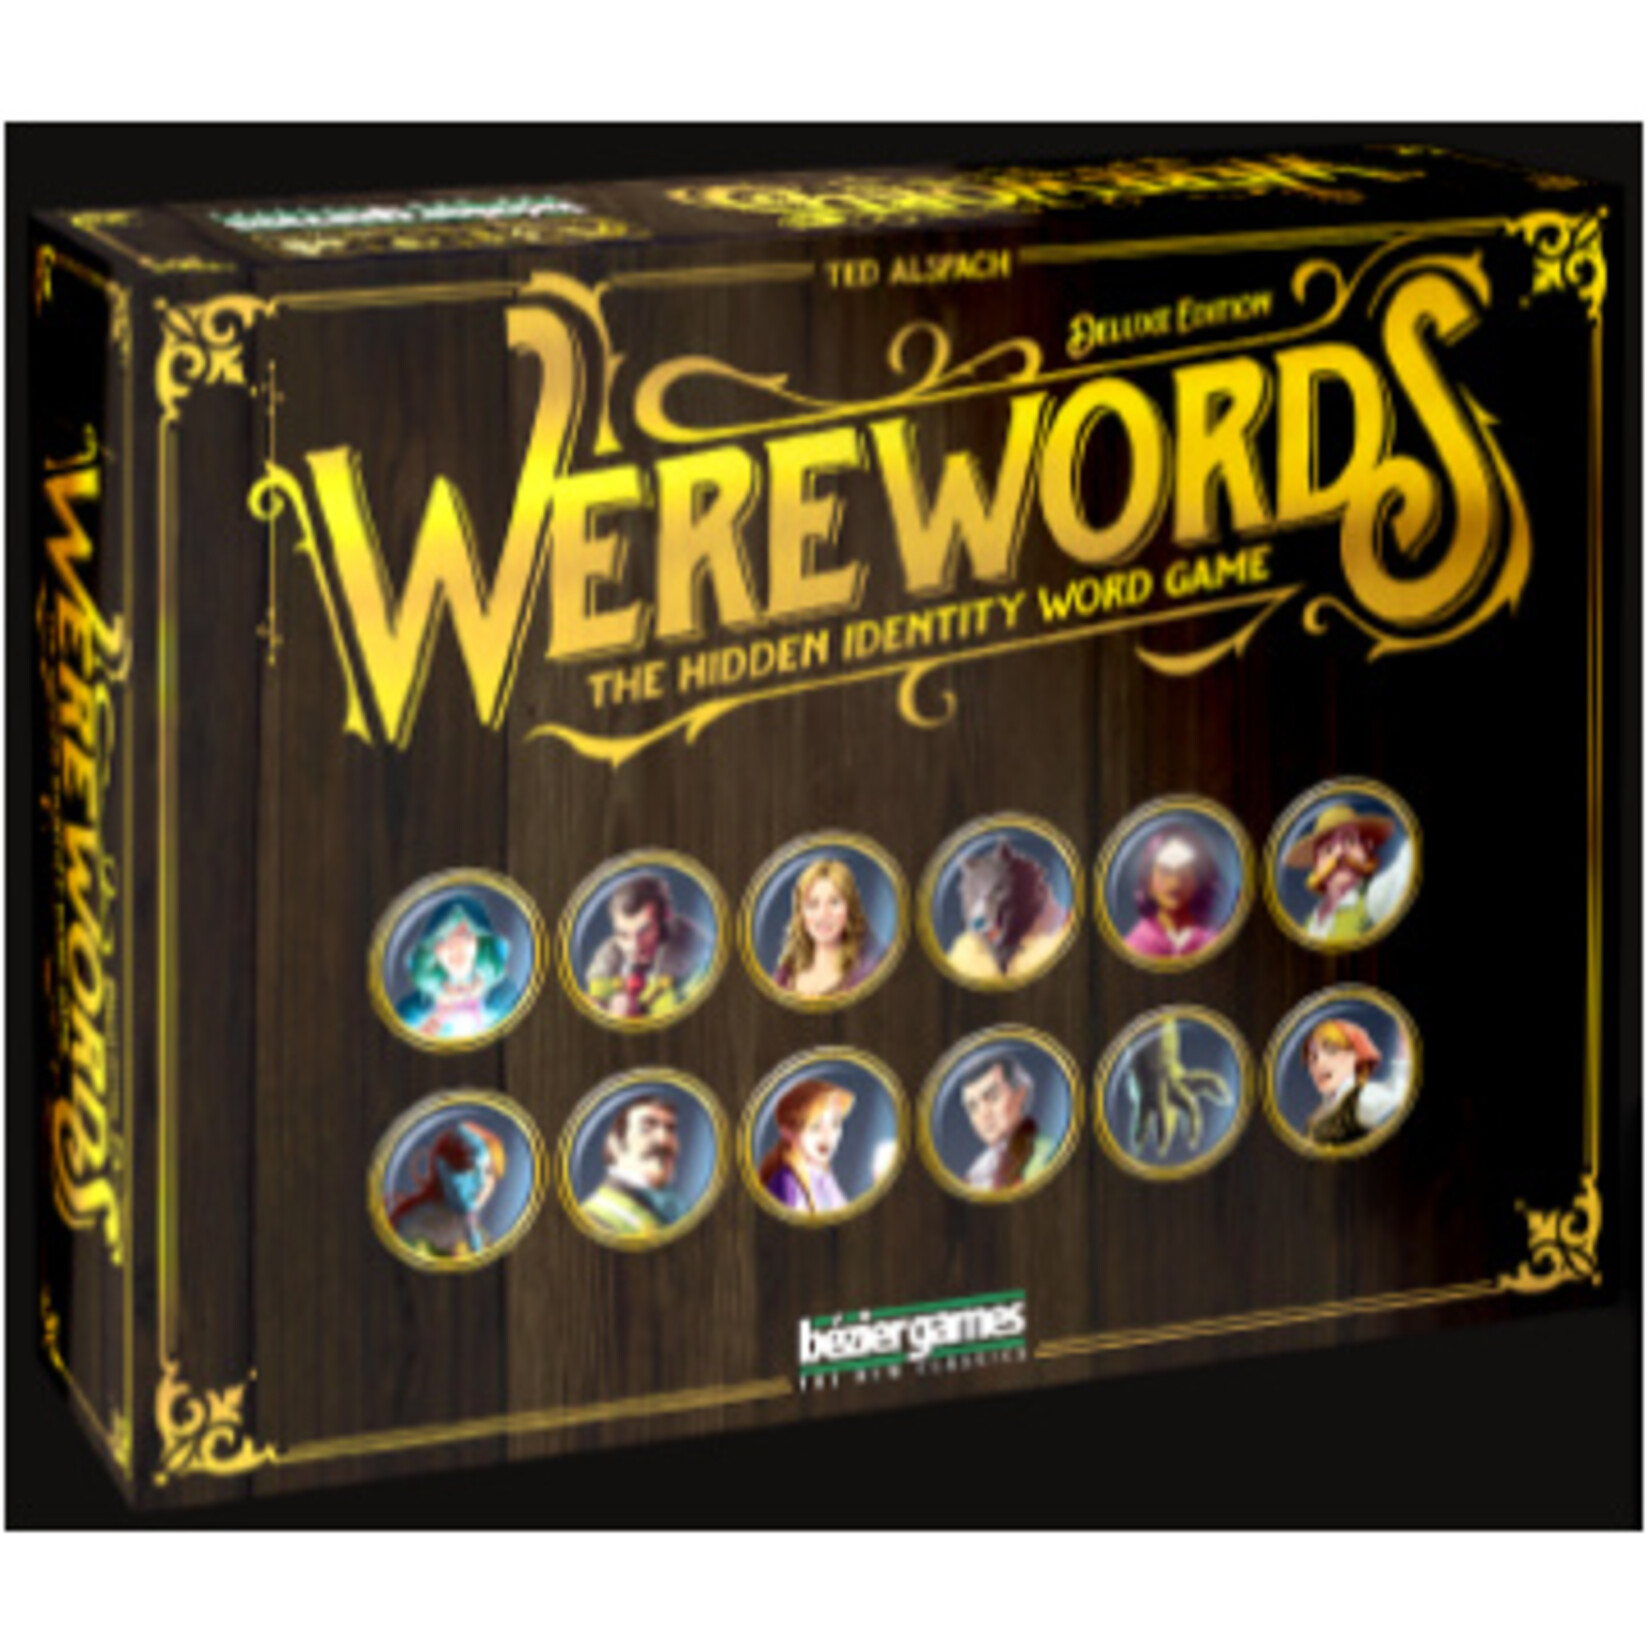 Werewords Deluxe